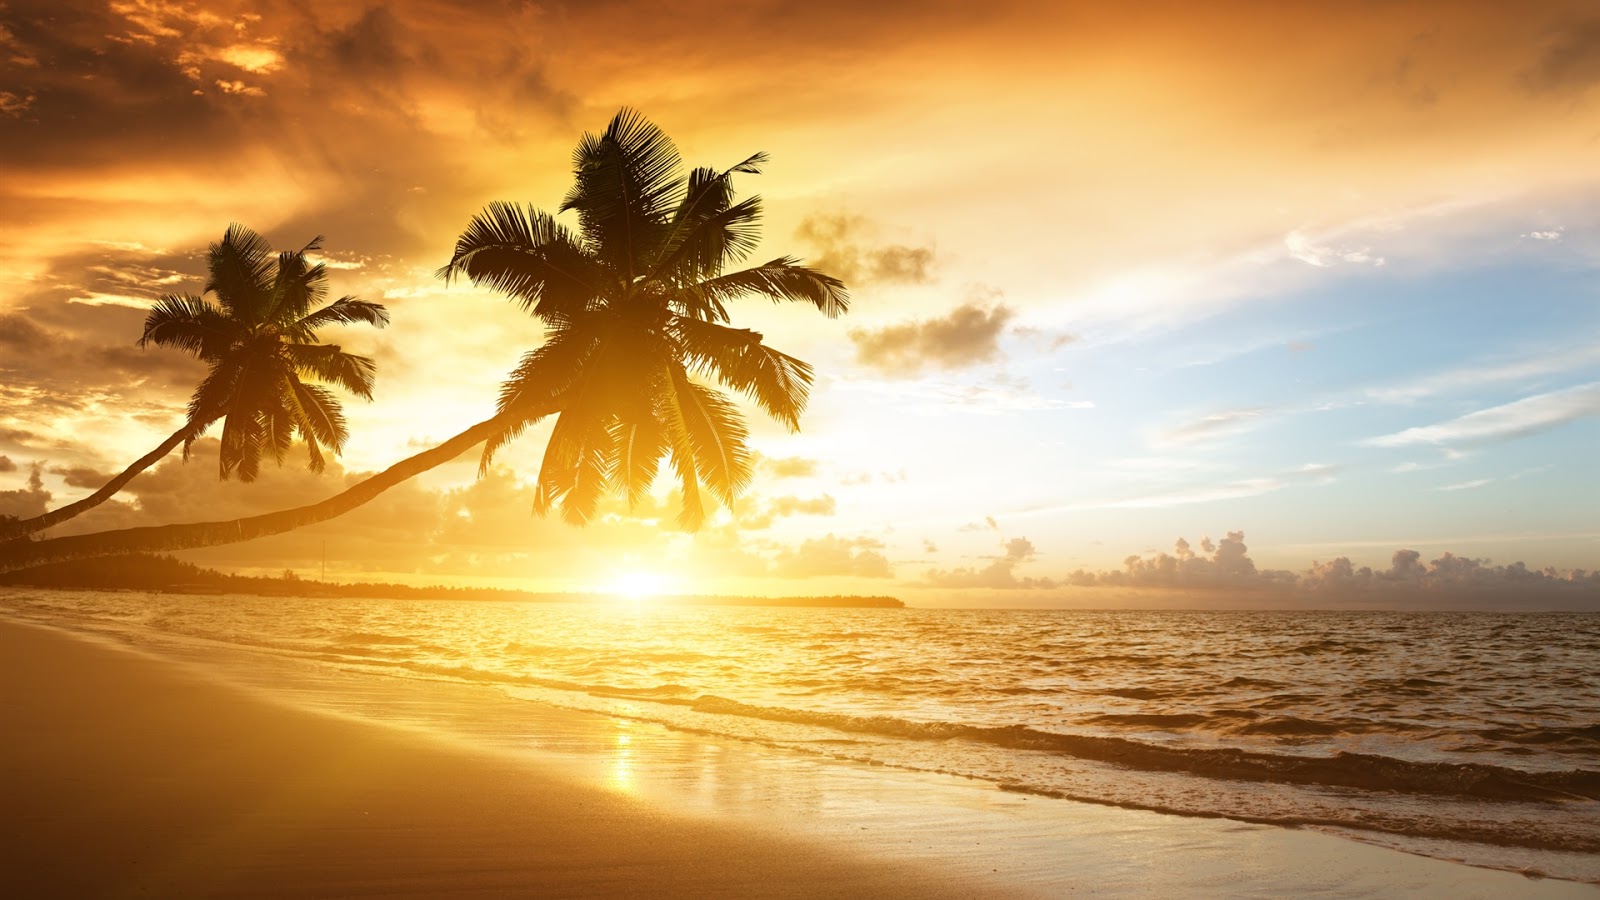 Caribbean Coast Scenery Full HD Desktop Wallpapers 1080p